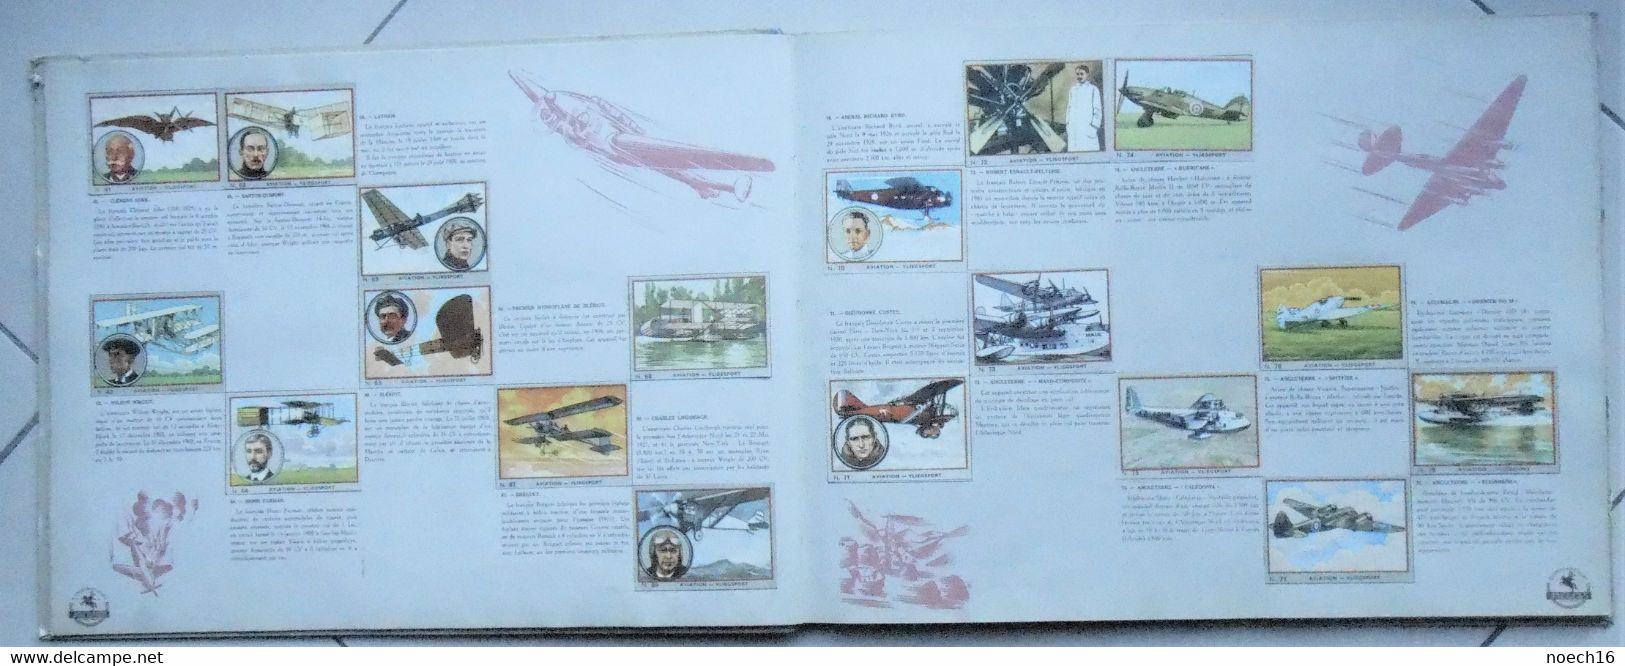 Album Chromos complet - Chocolat Jacques - Autos, Avions, Marine de Guerre